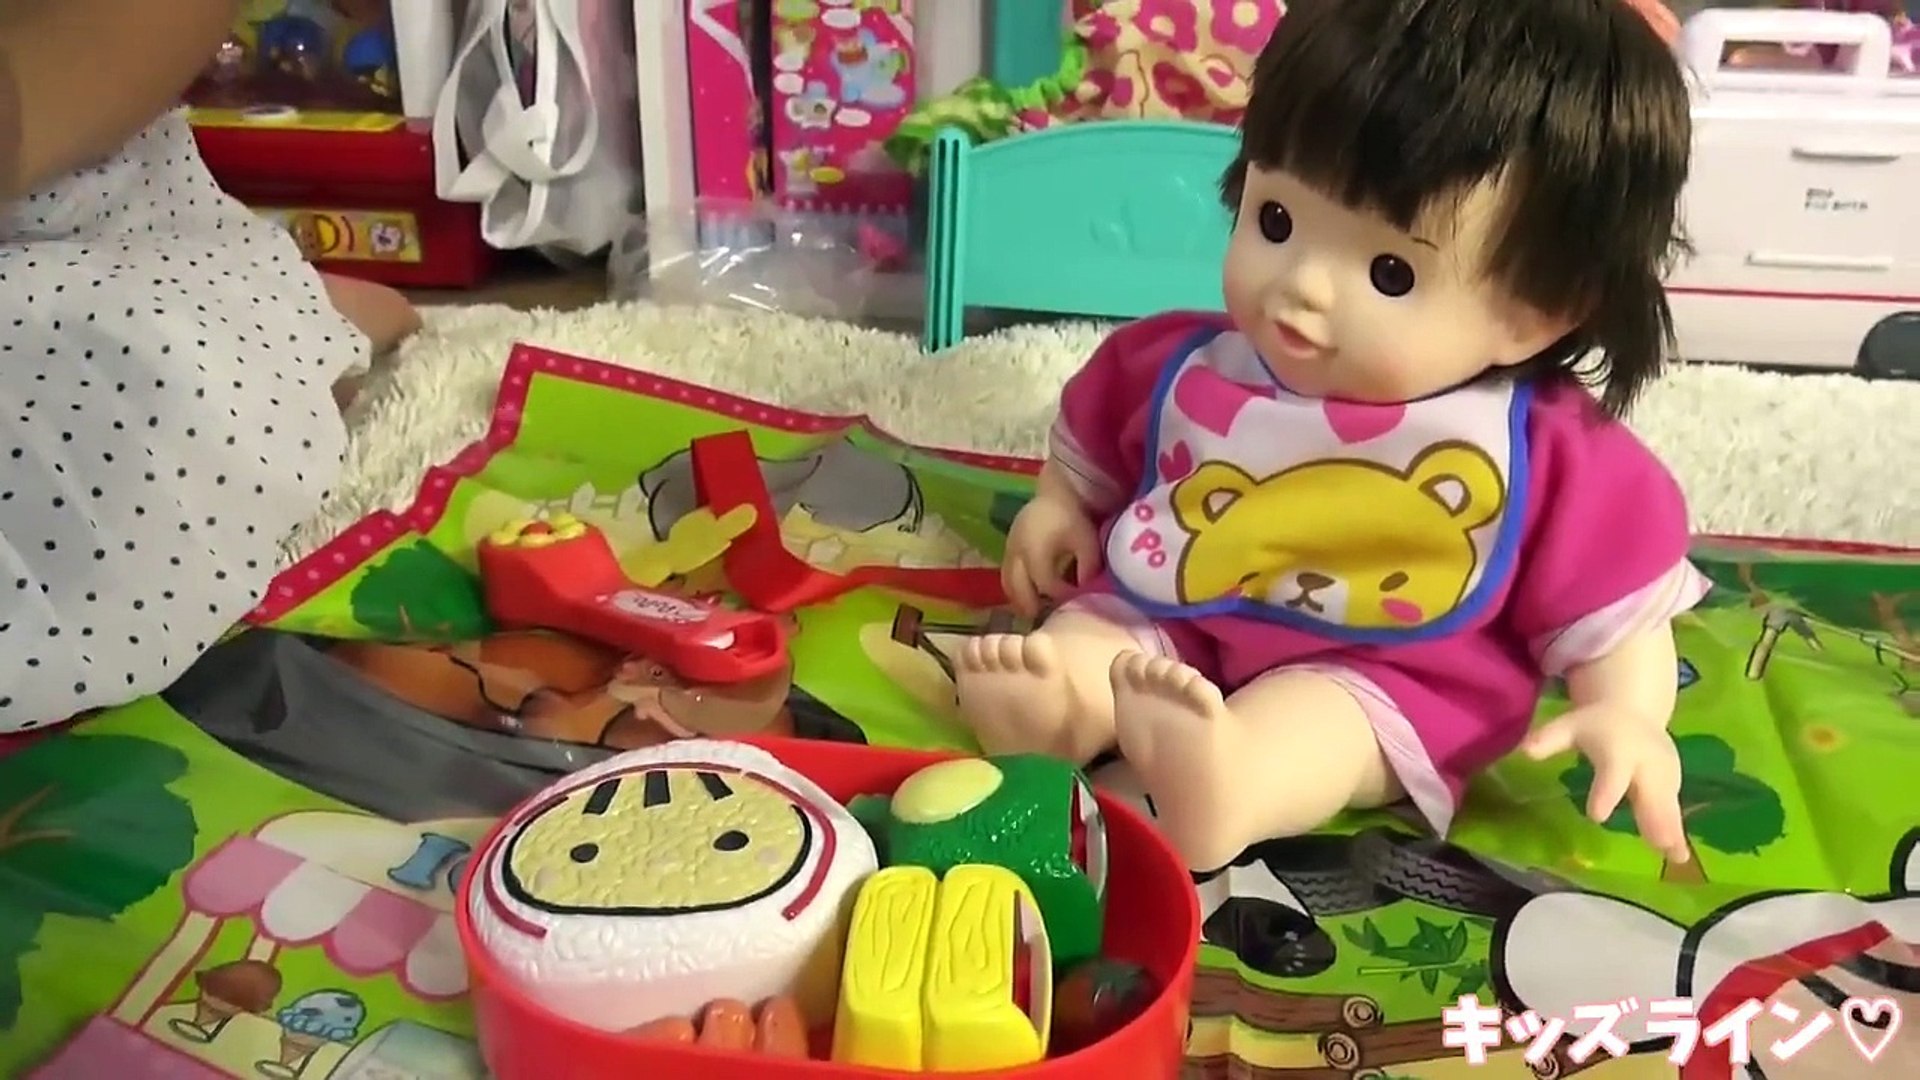 ぽぽちゃん おしゃべり弁当 ピクニックシート付き 音声 お道具 おもちゃ おままごと Baby Doll Popochan Box Lunch Toy Dailymotion Video